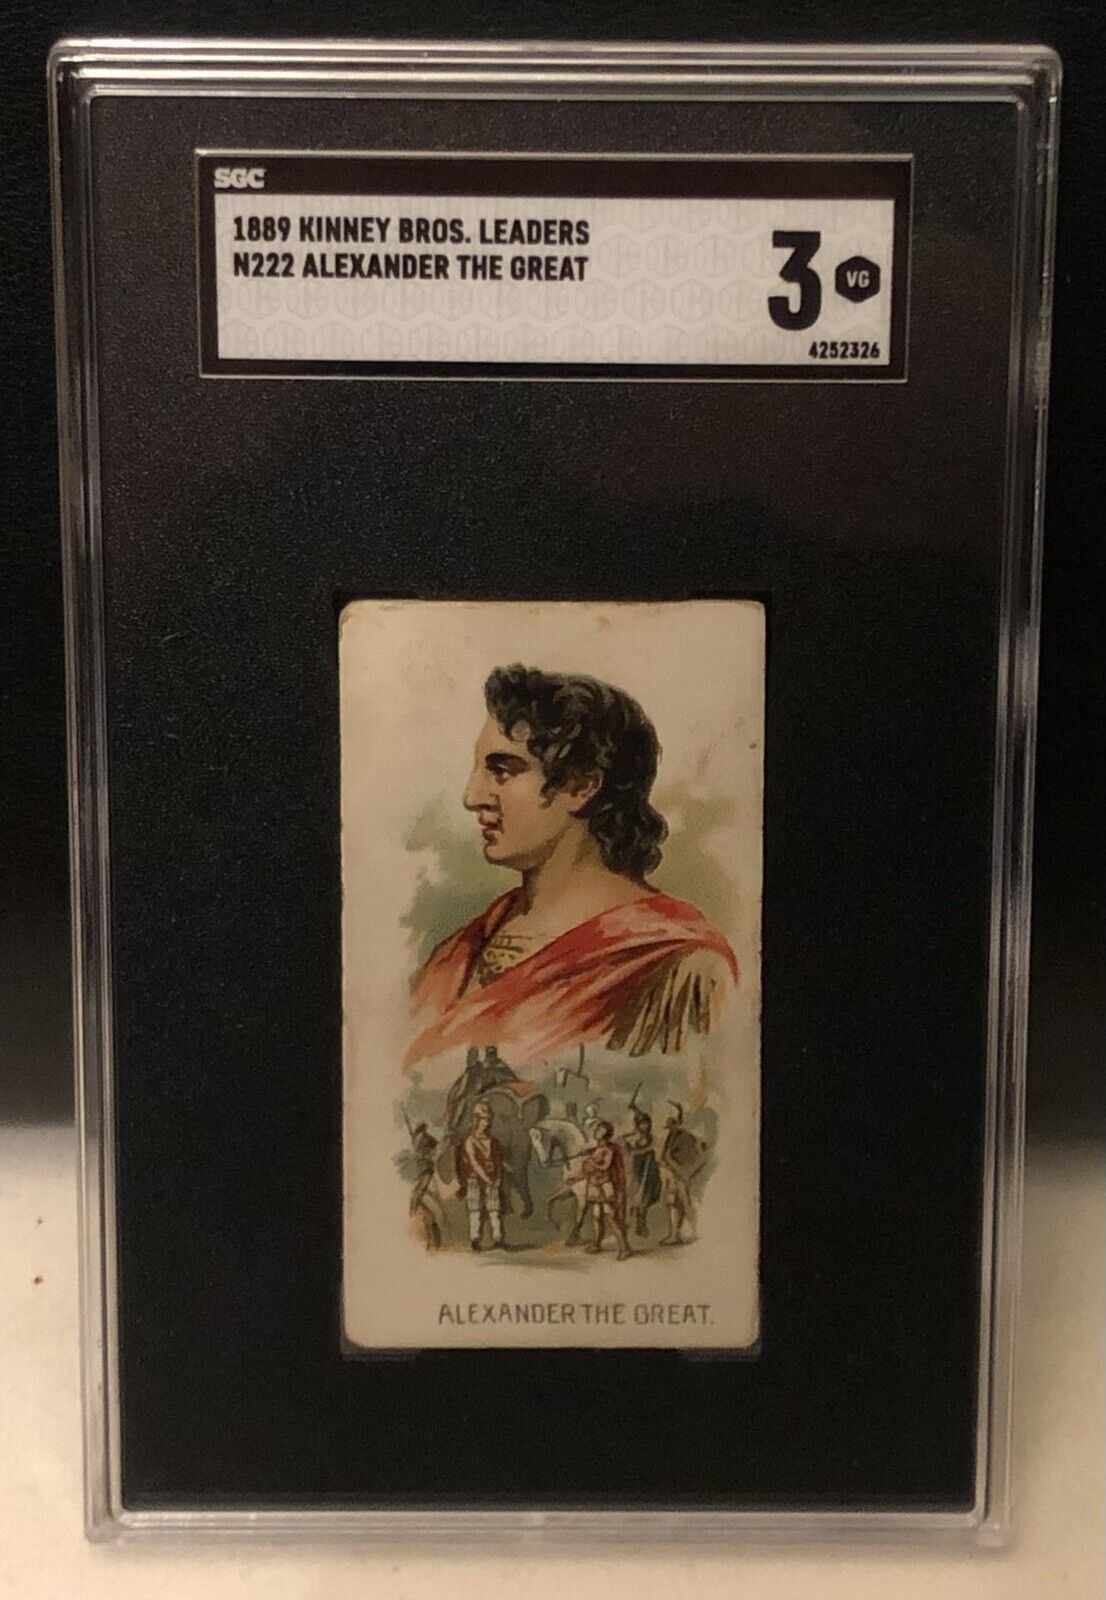 1889 Alexander The Great SGC 3 Kinney Bros Leaders N222 Rookie Card Tobacco Card